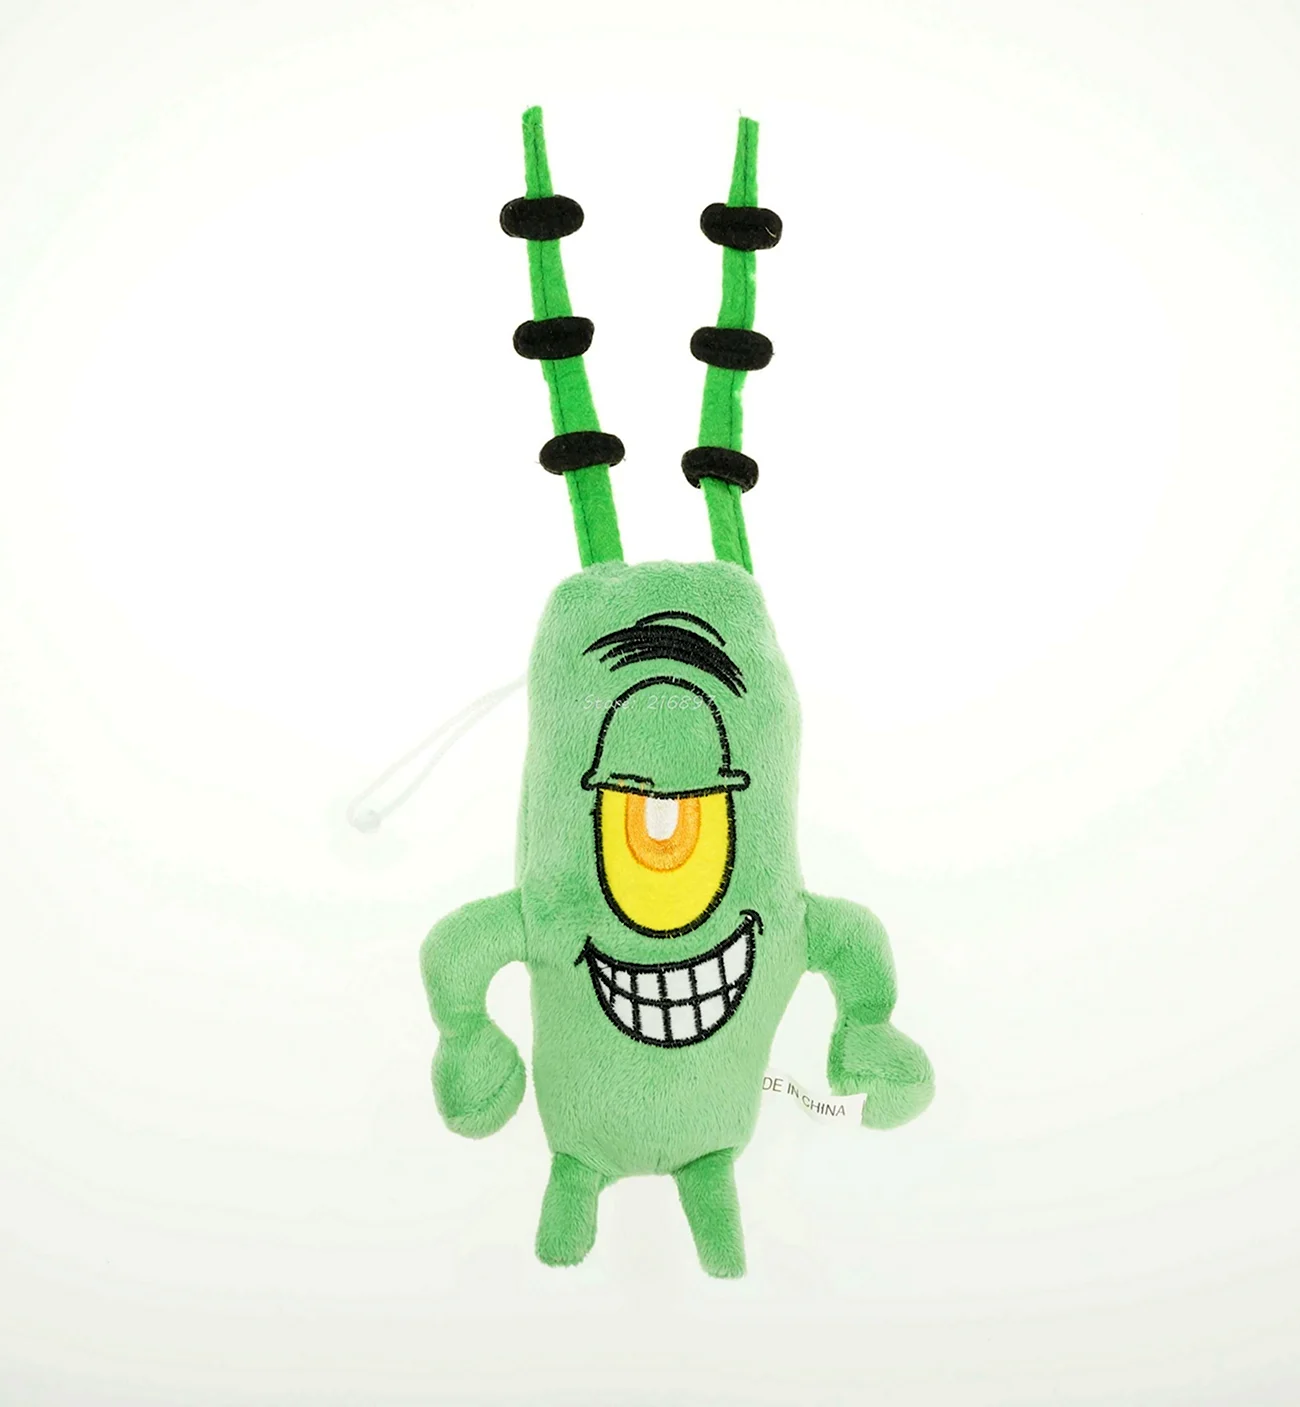 Игрушка планктон из Спанч Боба. Картинка из мультфильма